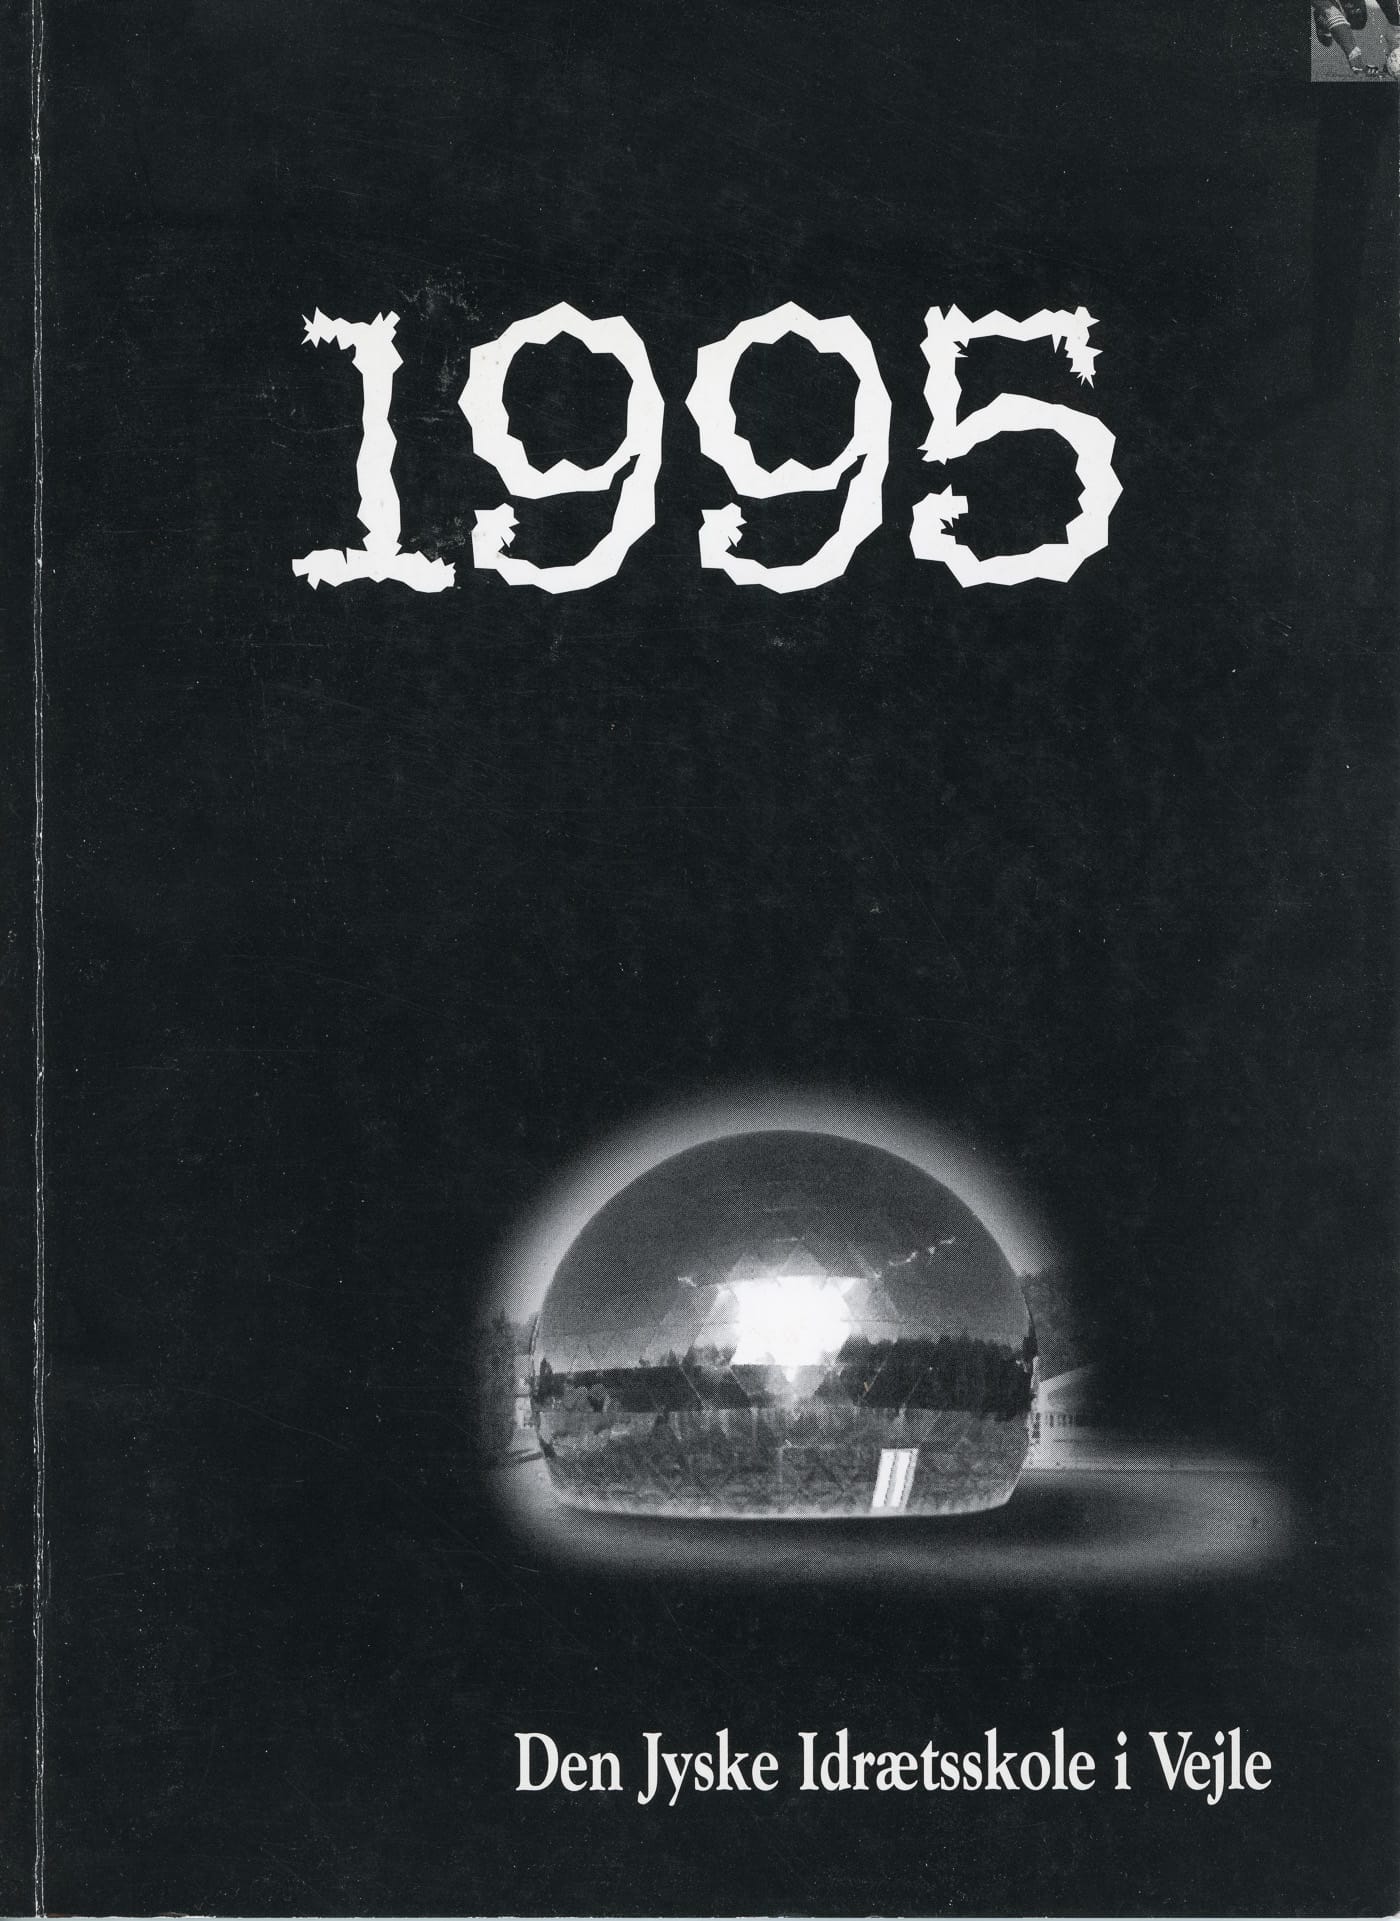 Forside til Årsskriftet 1995